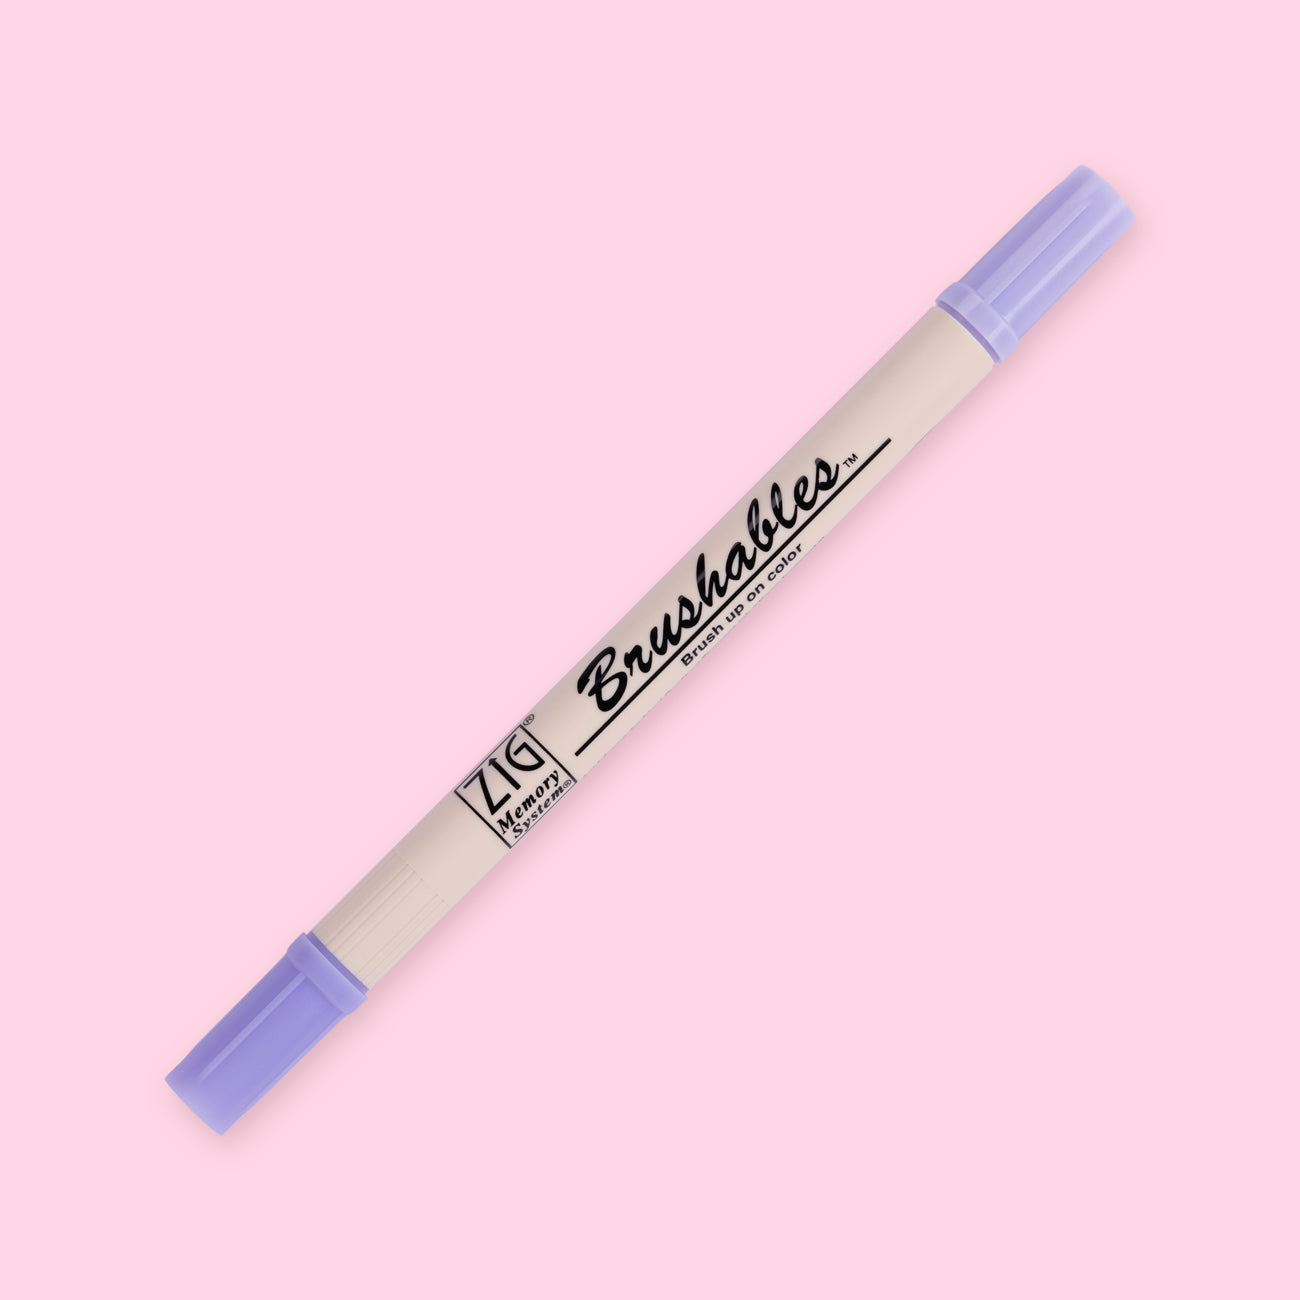 Kuretake Zig Brushables Brush Pen - 4 Colors Purple Set